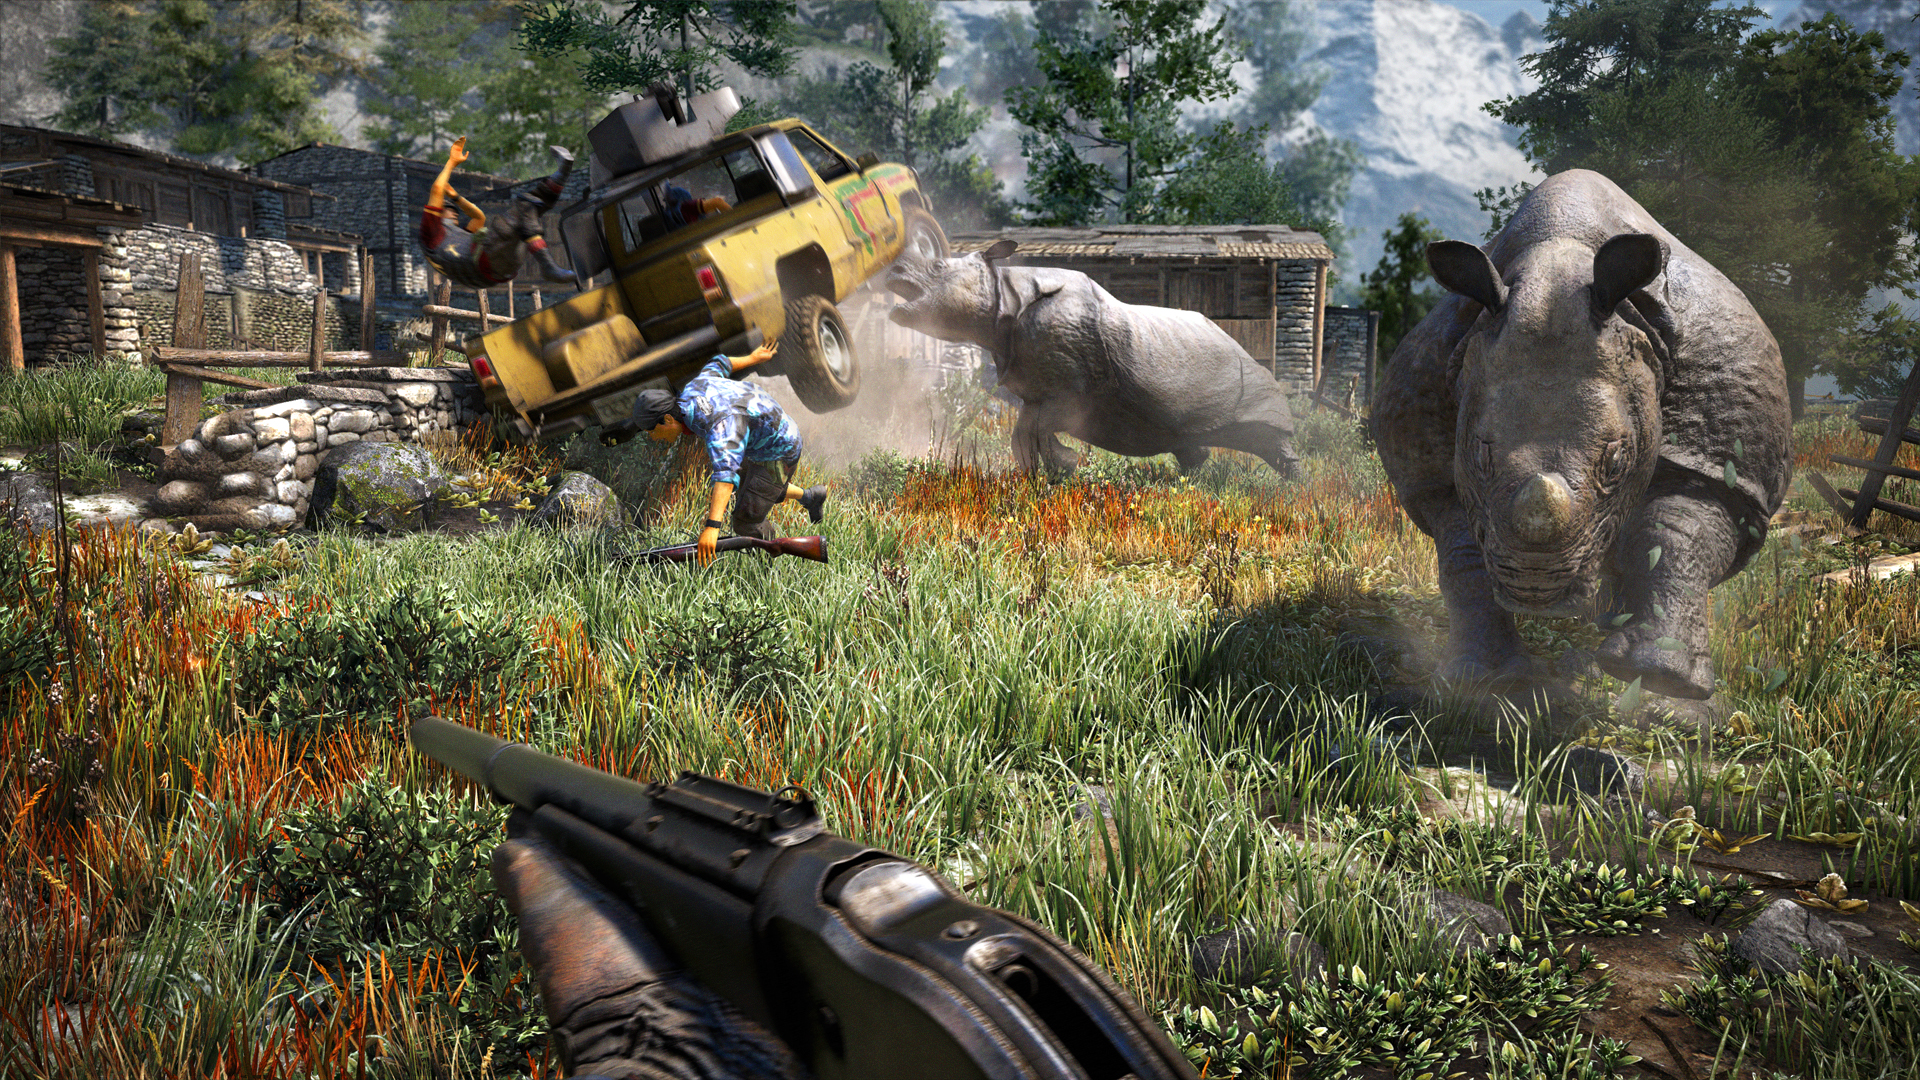 Ansioso por Far Cry 4? Veja 10 coisas para ficar de olho no game | Voxel